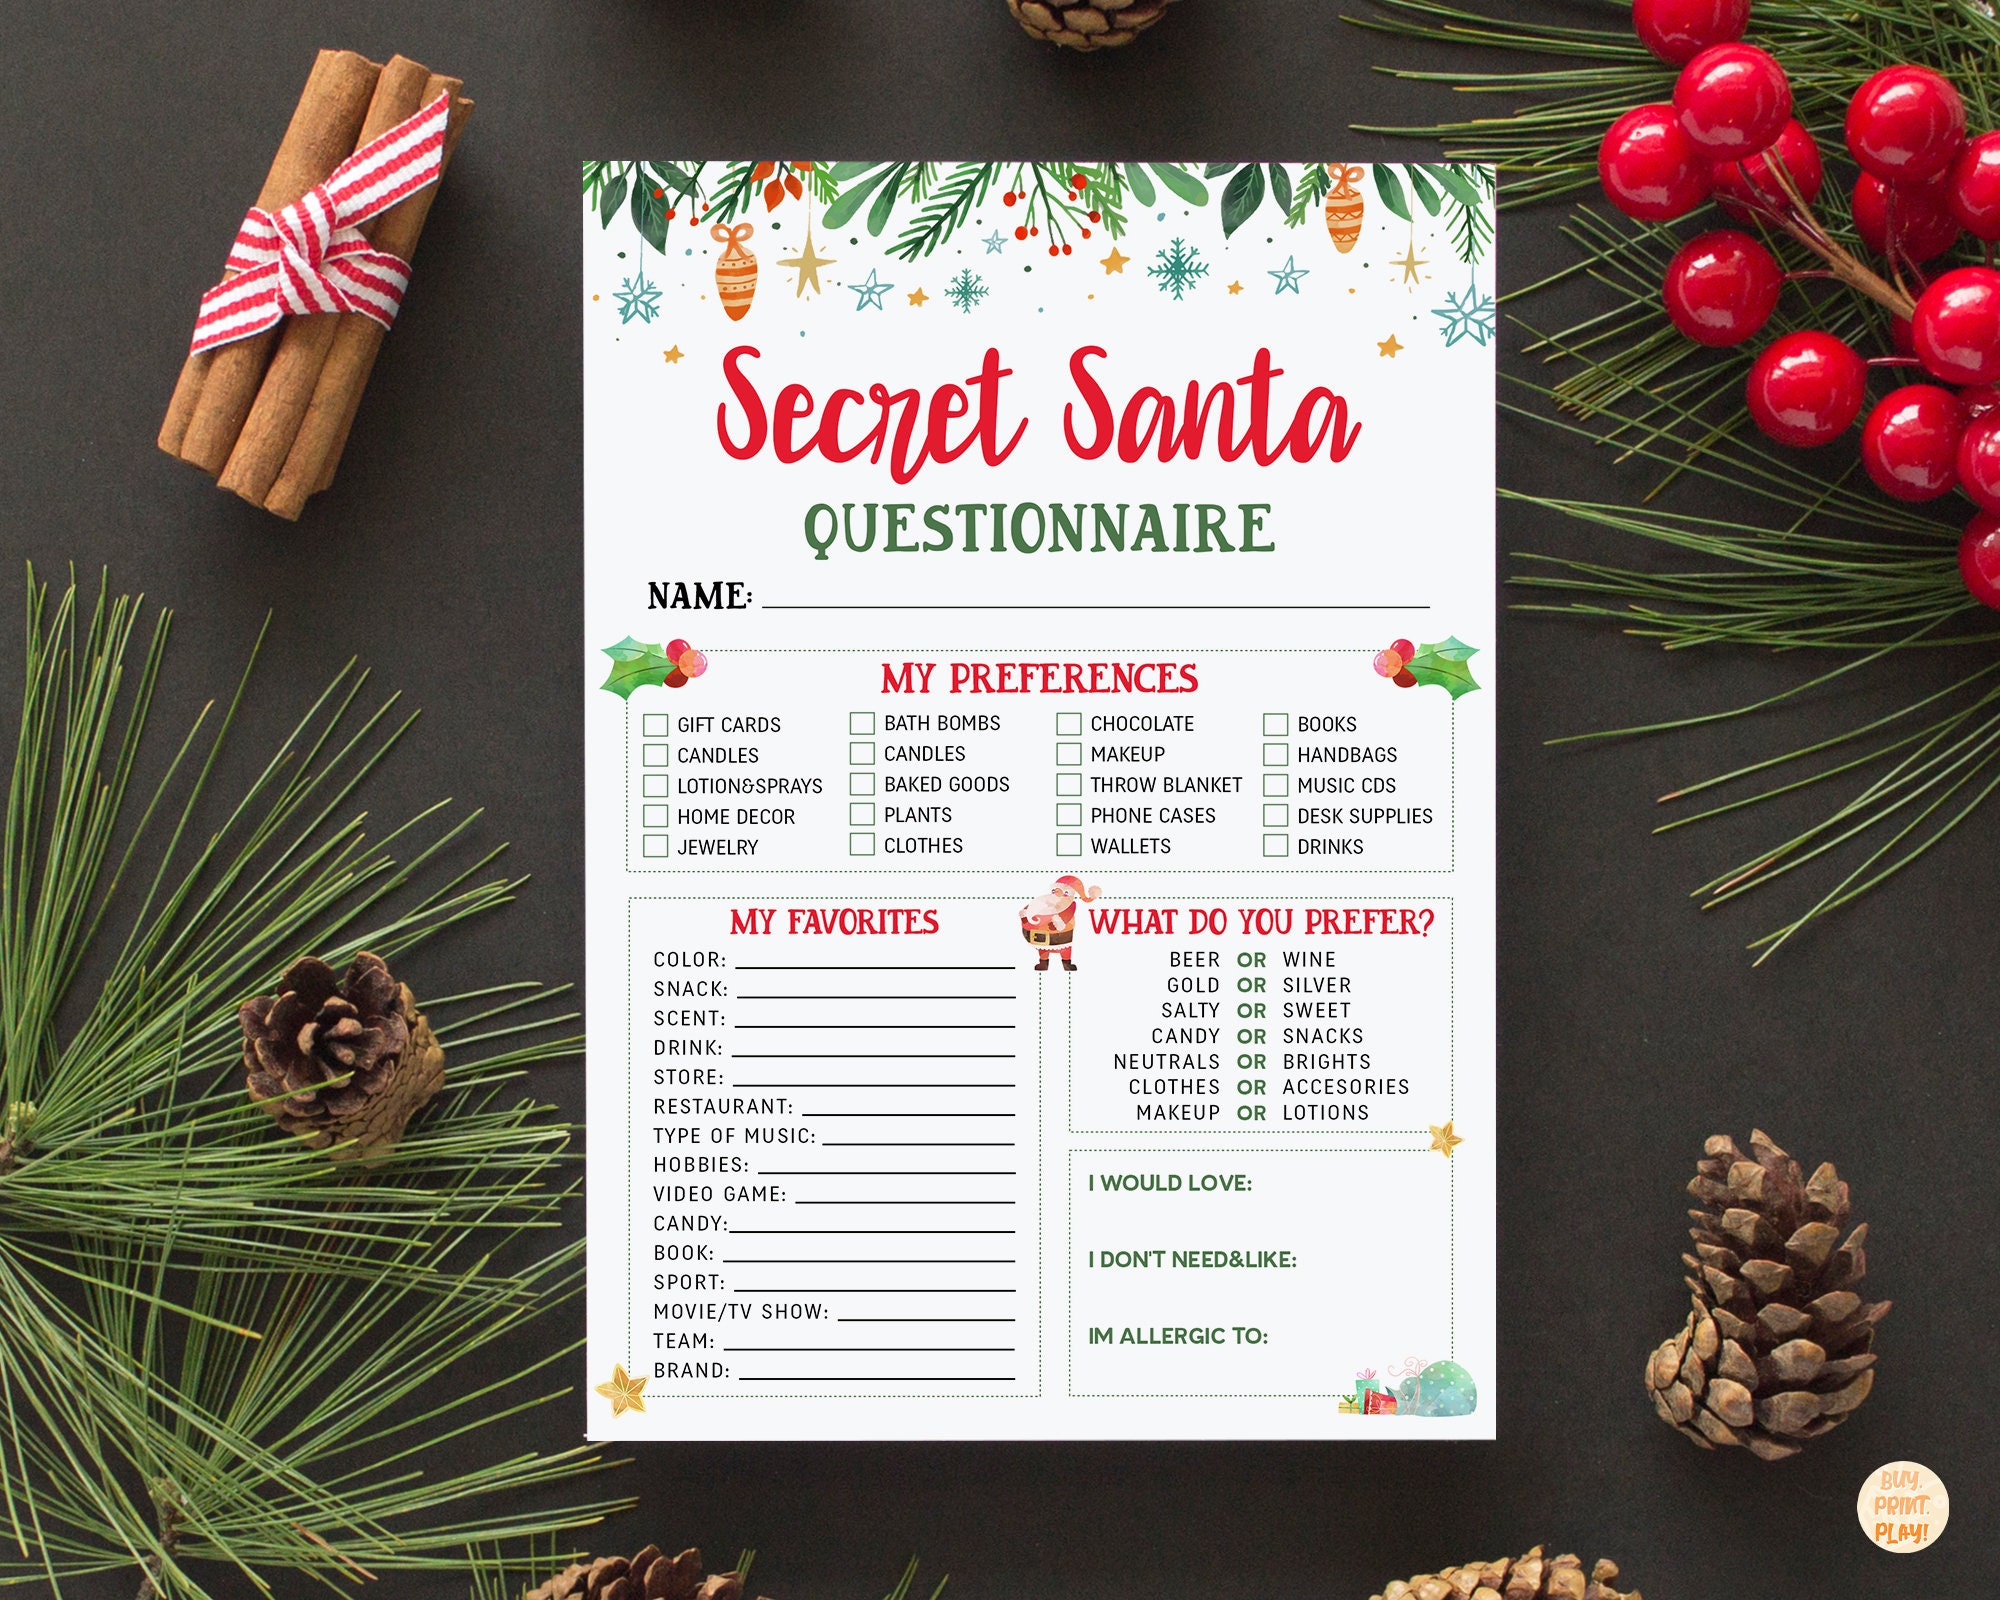 Secret Santa Exchange Questionnaire & Sign up Sheet - Etsy